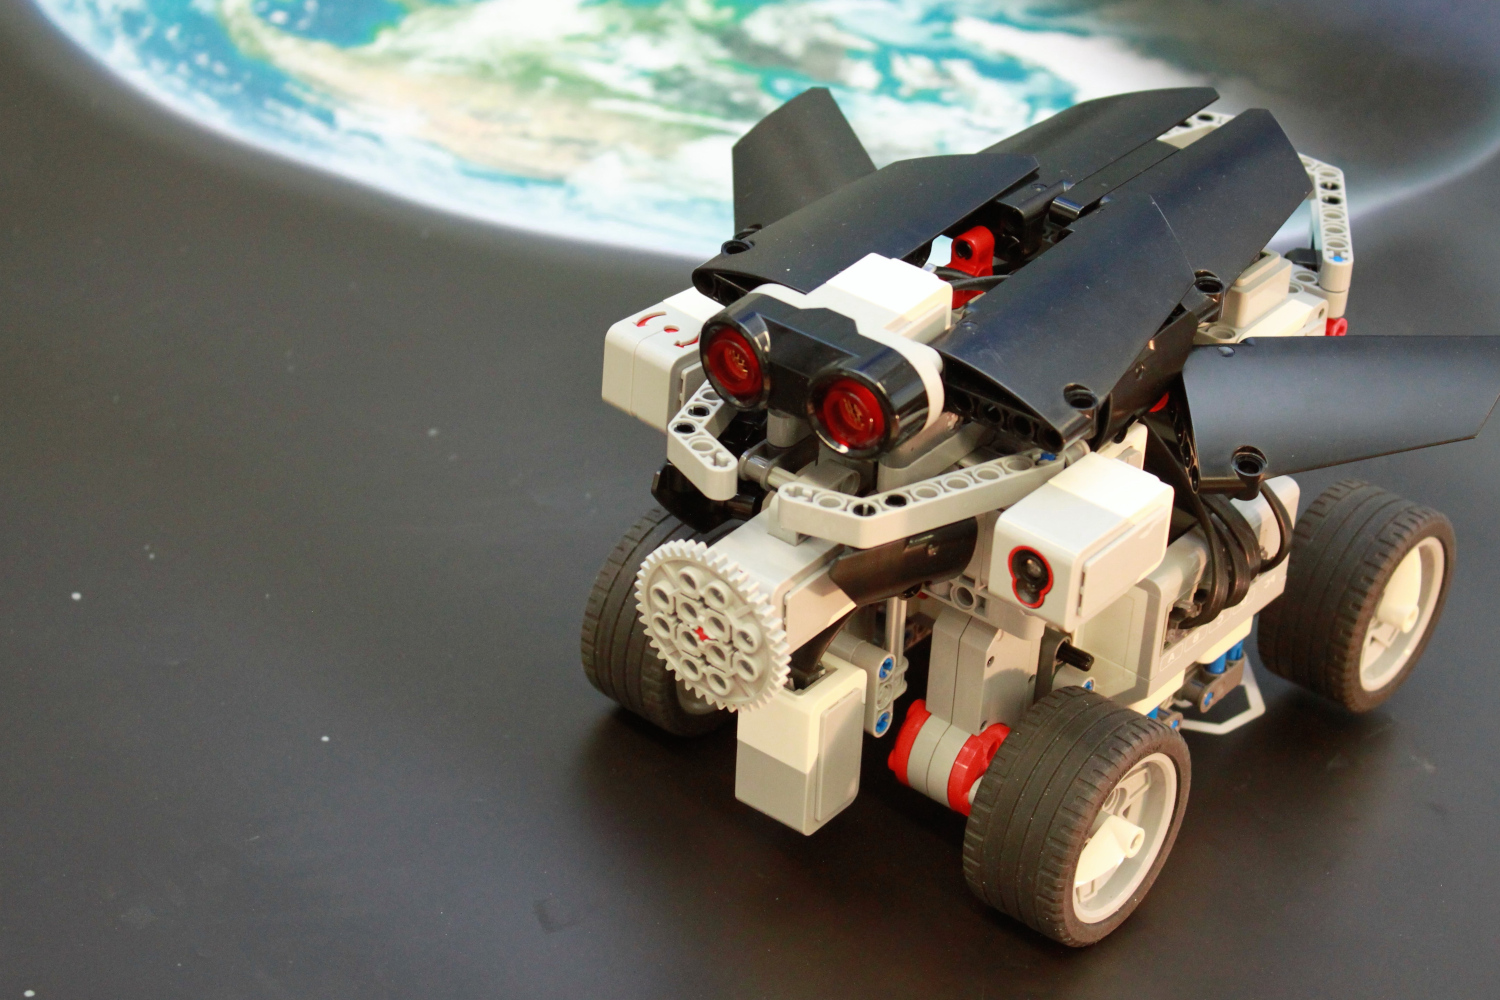 LEGO Mindstorms EV3, CC-BY-SA 4.0